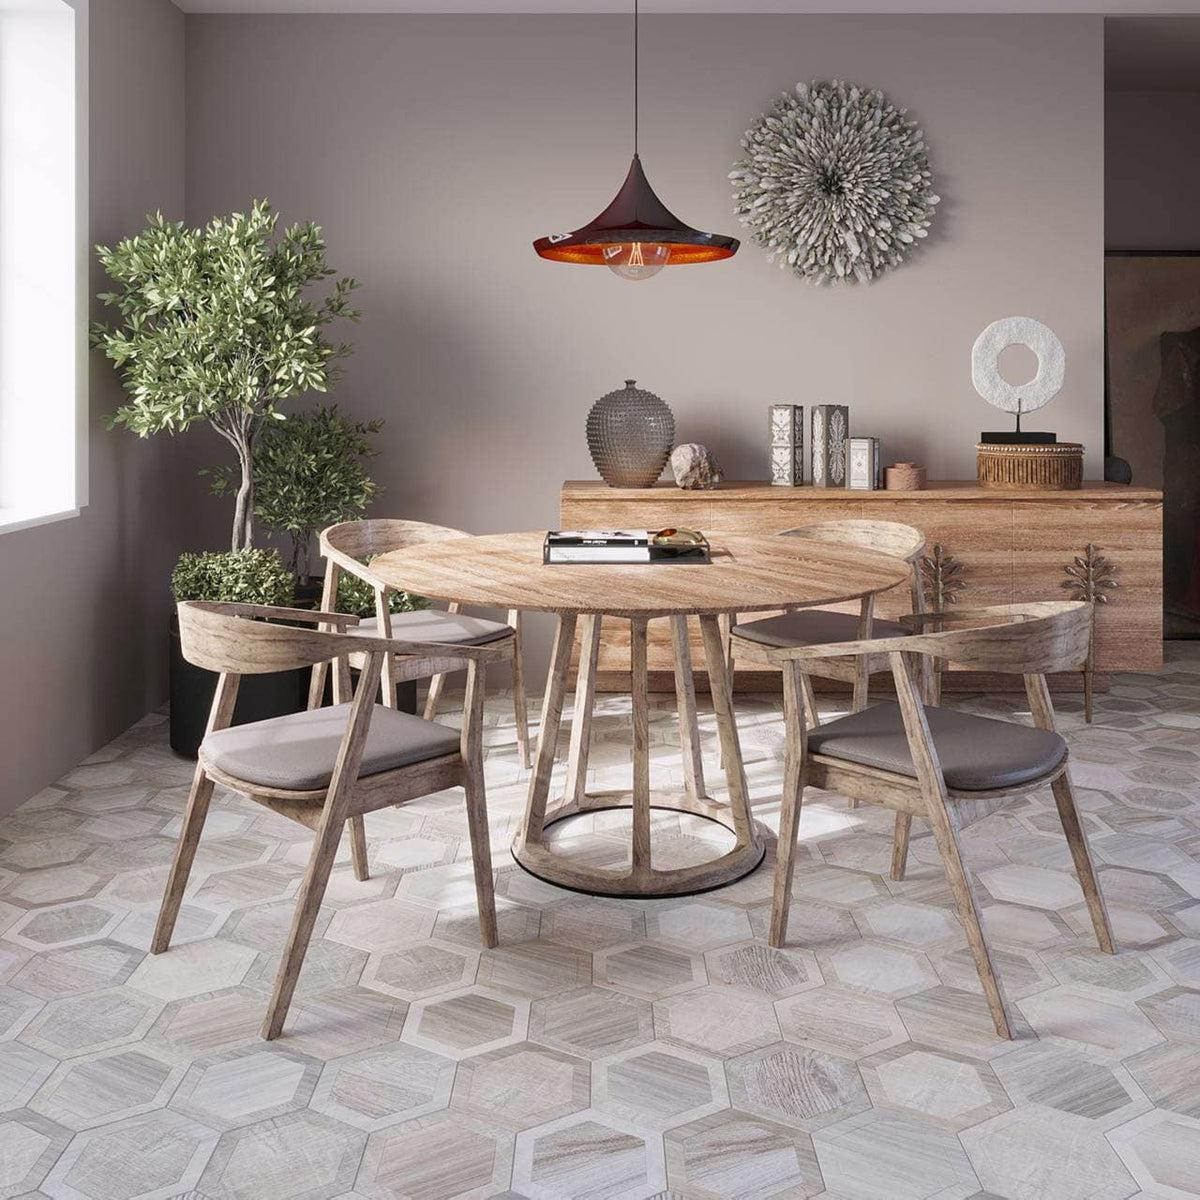 Wood look hexagon tile dining room floor with mid century design